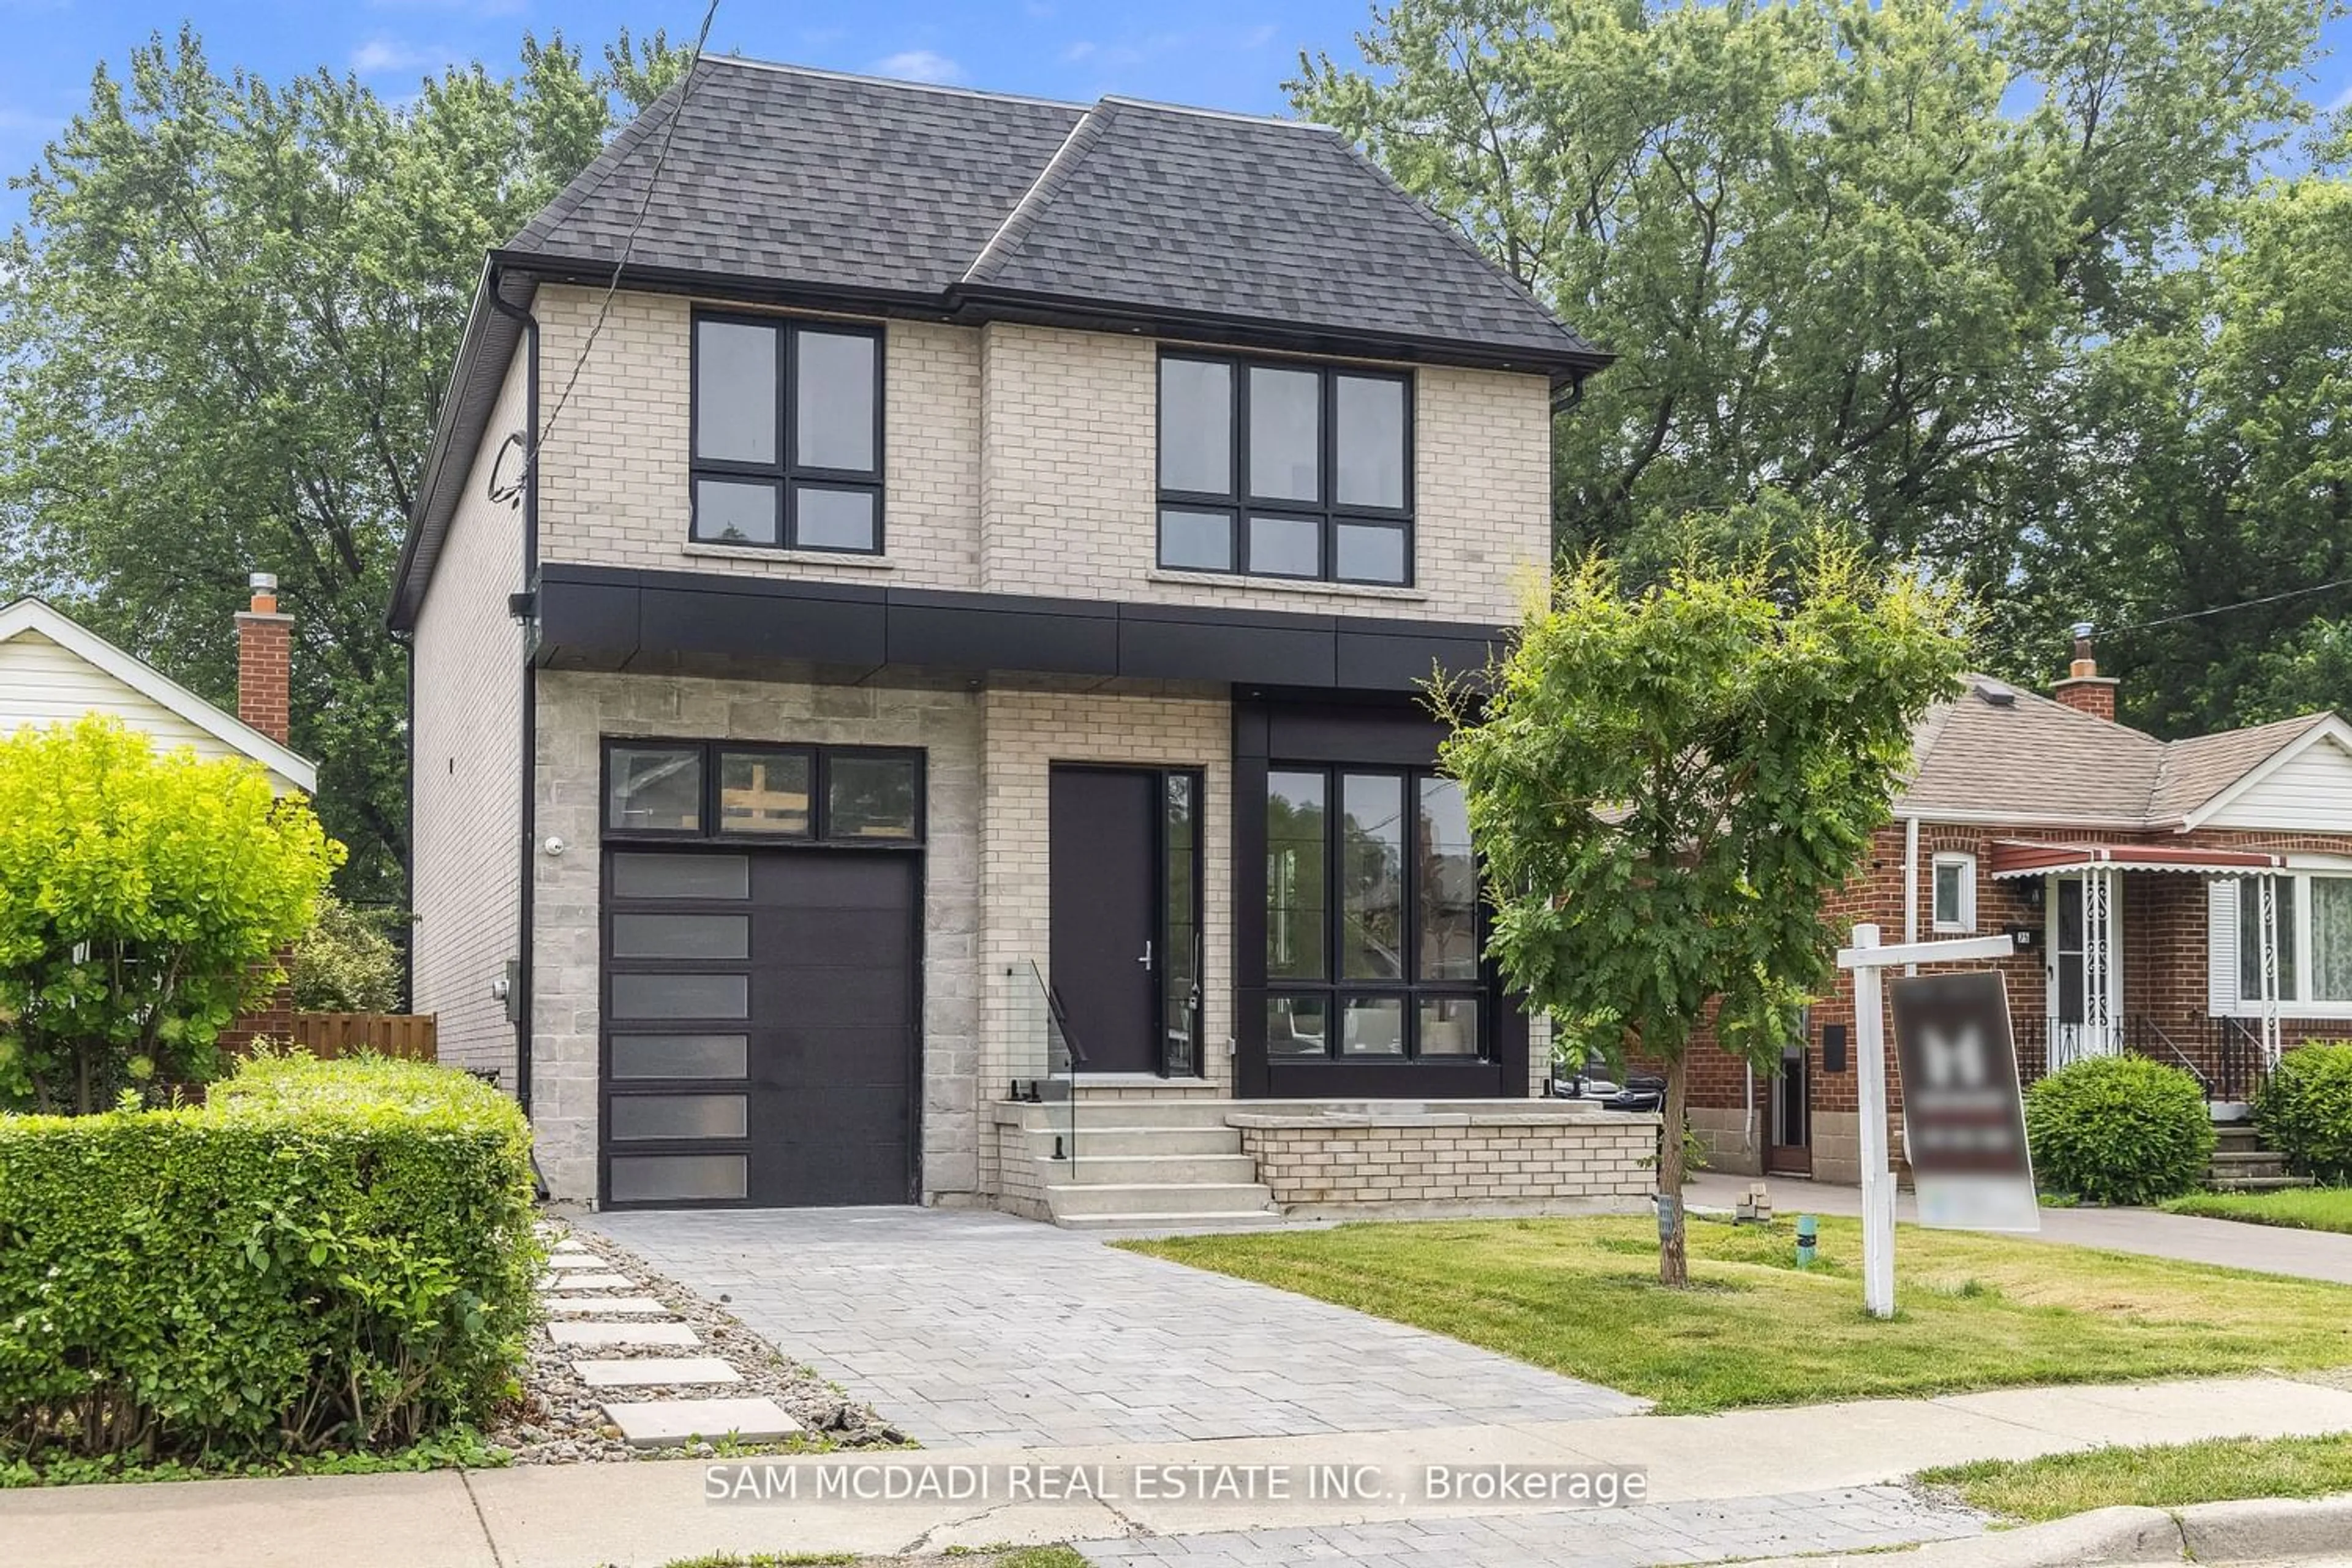 Home with brick exterior material for 73 Elma St, Toronto Ontario M8V 1X9